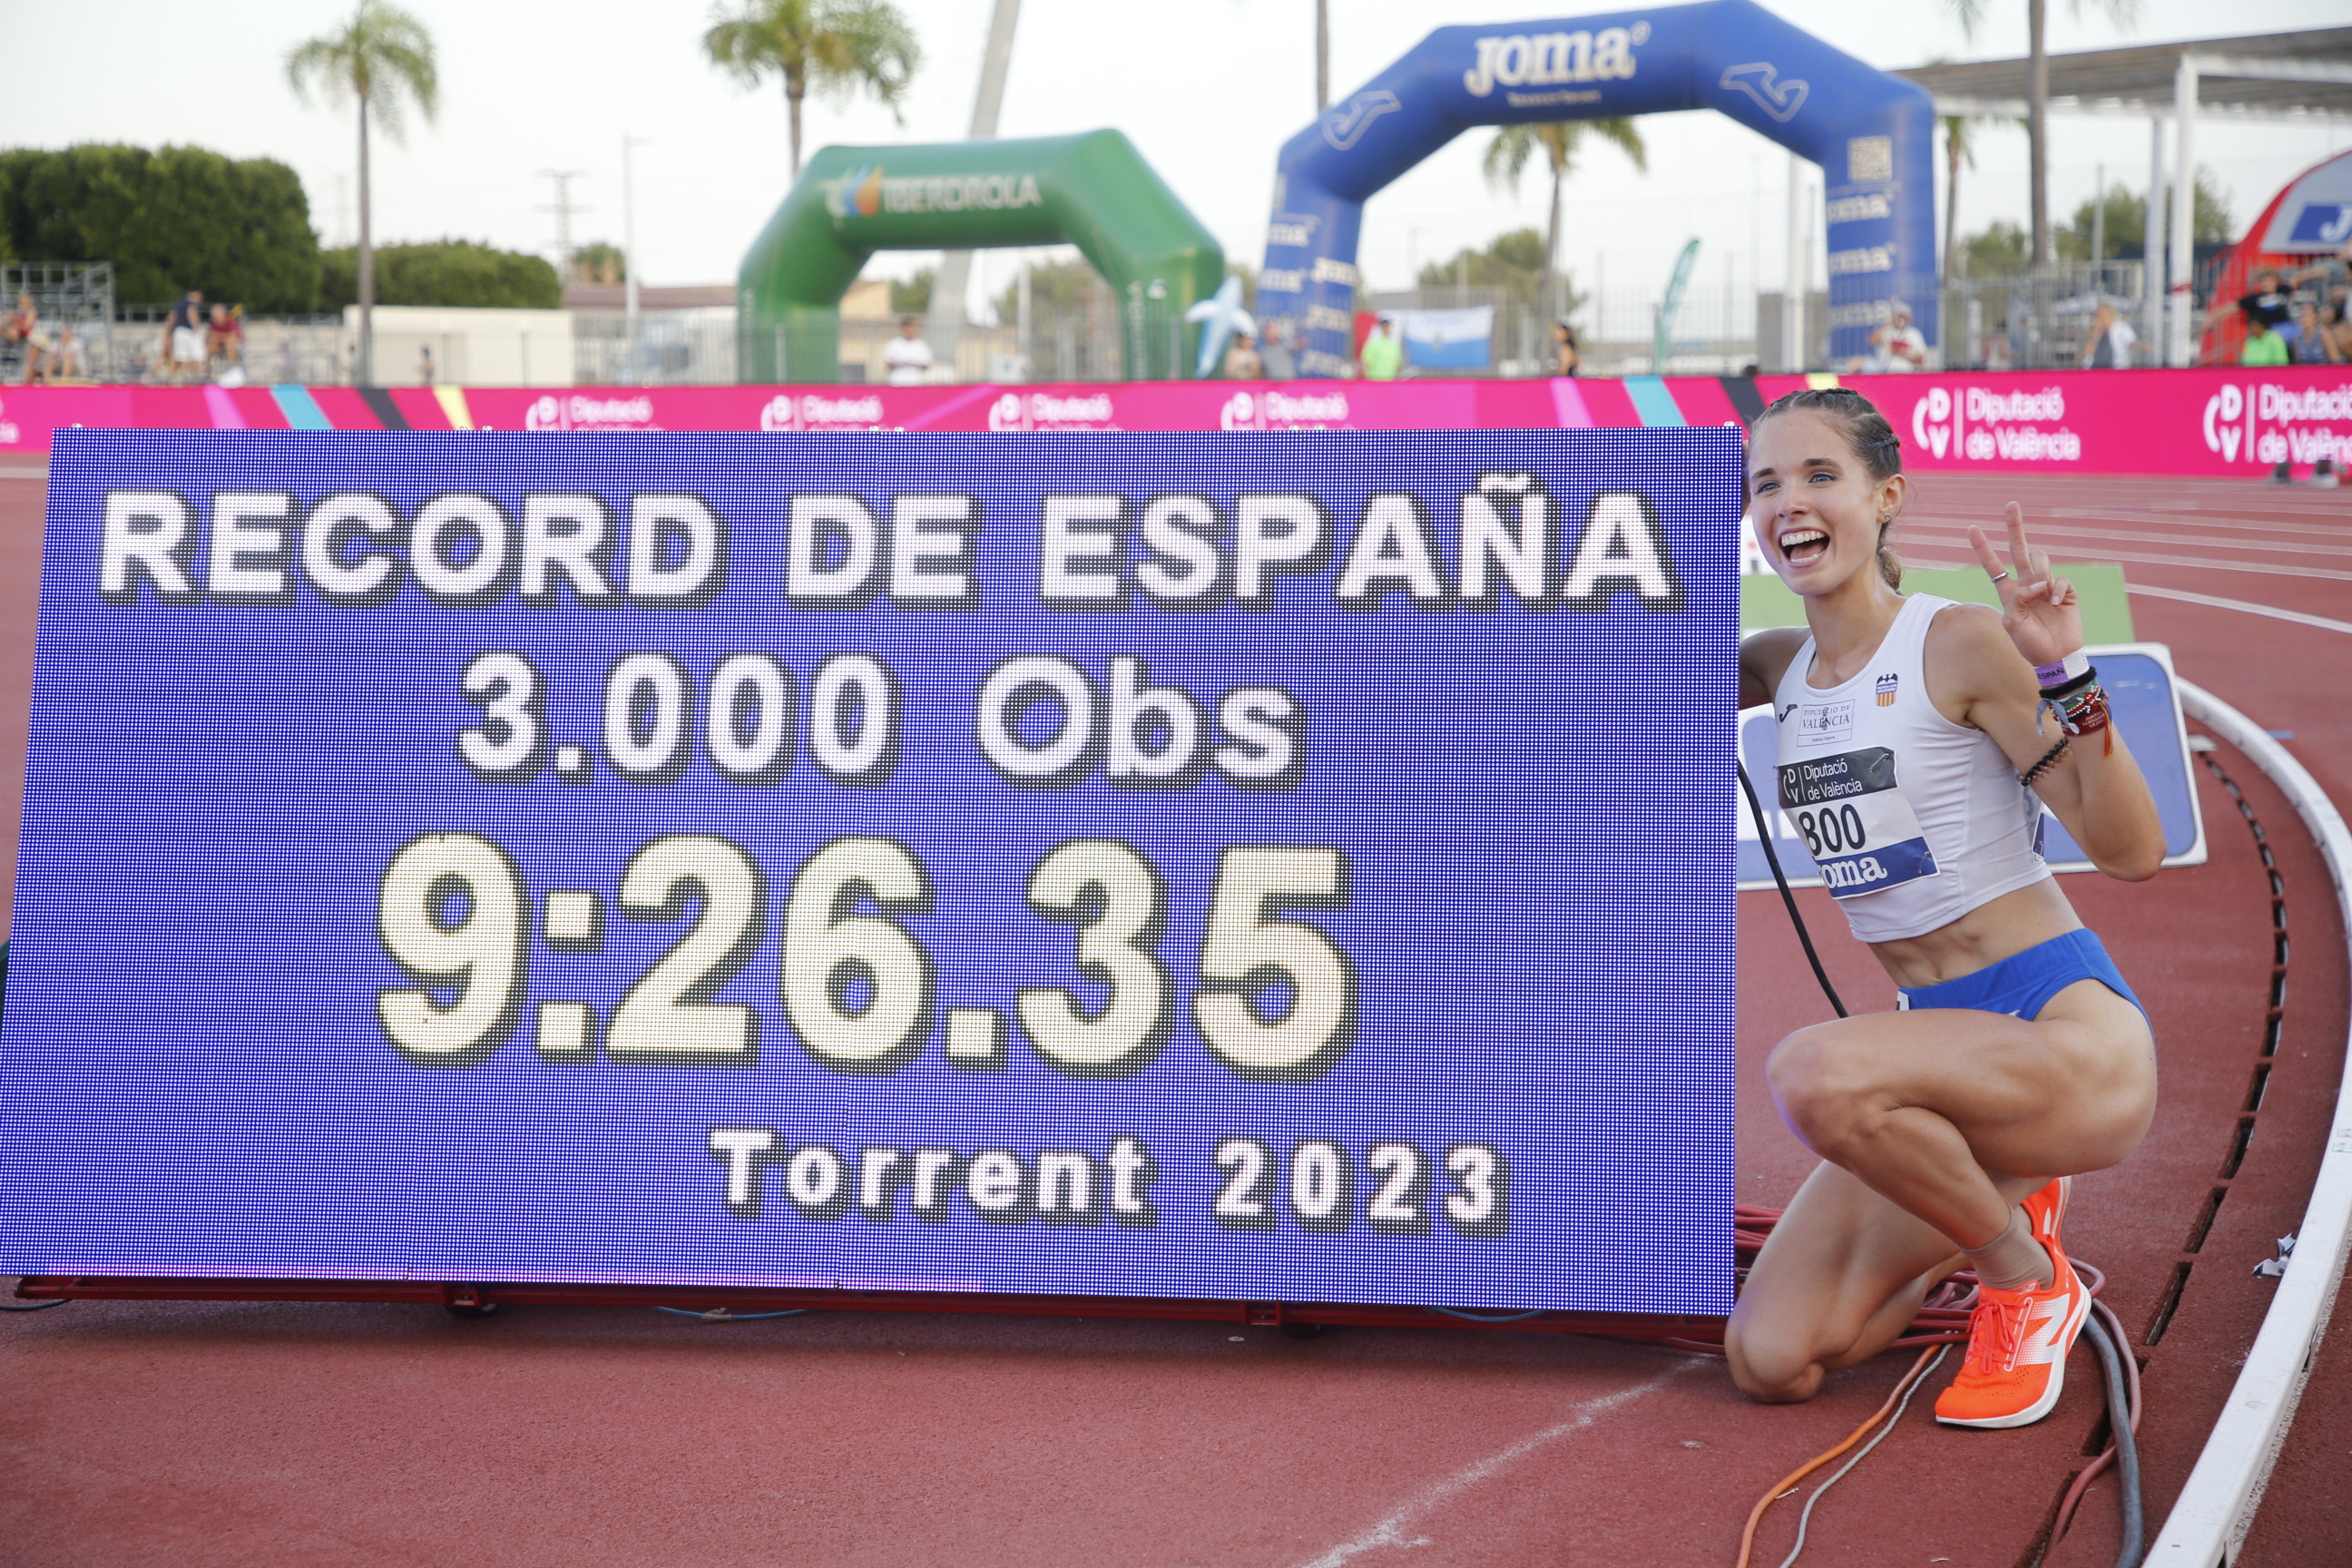 Marta Serrano récord de España sub23 3000m obstaculos